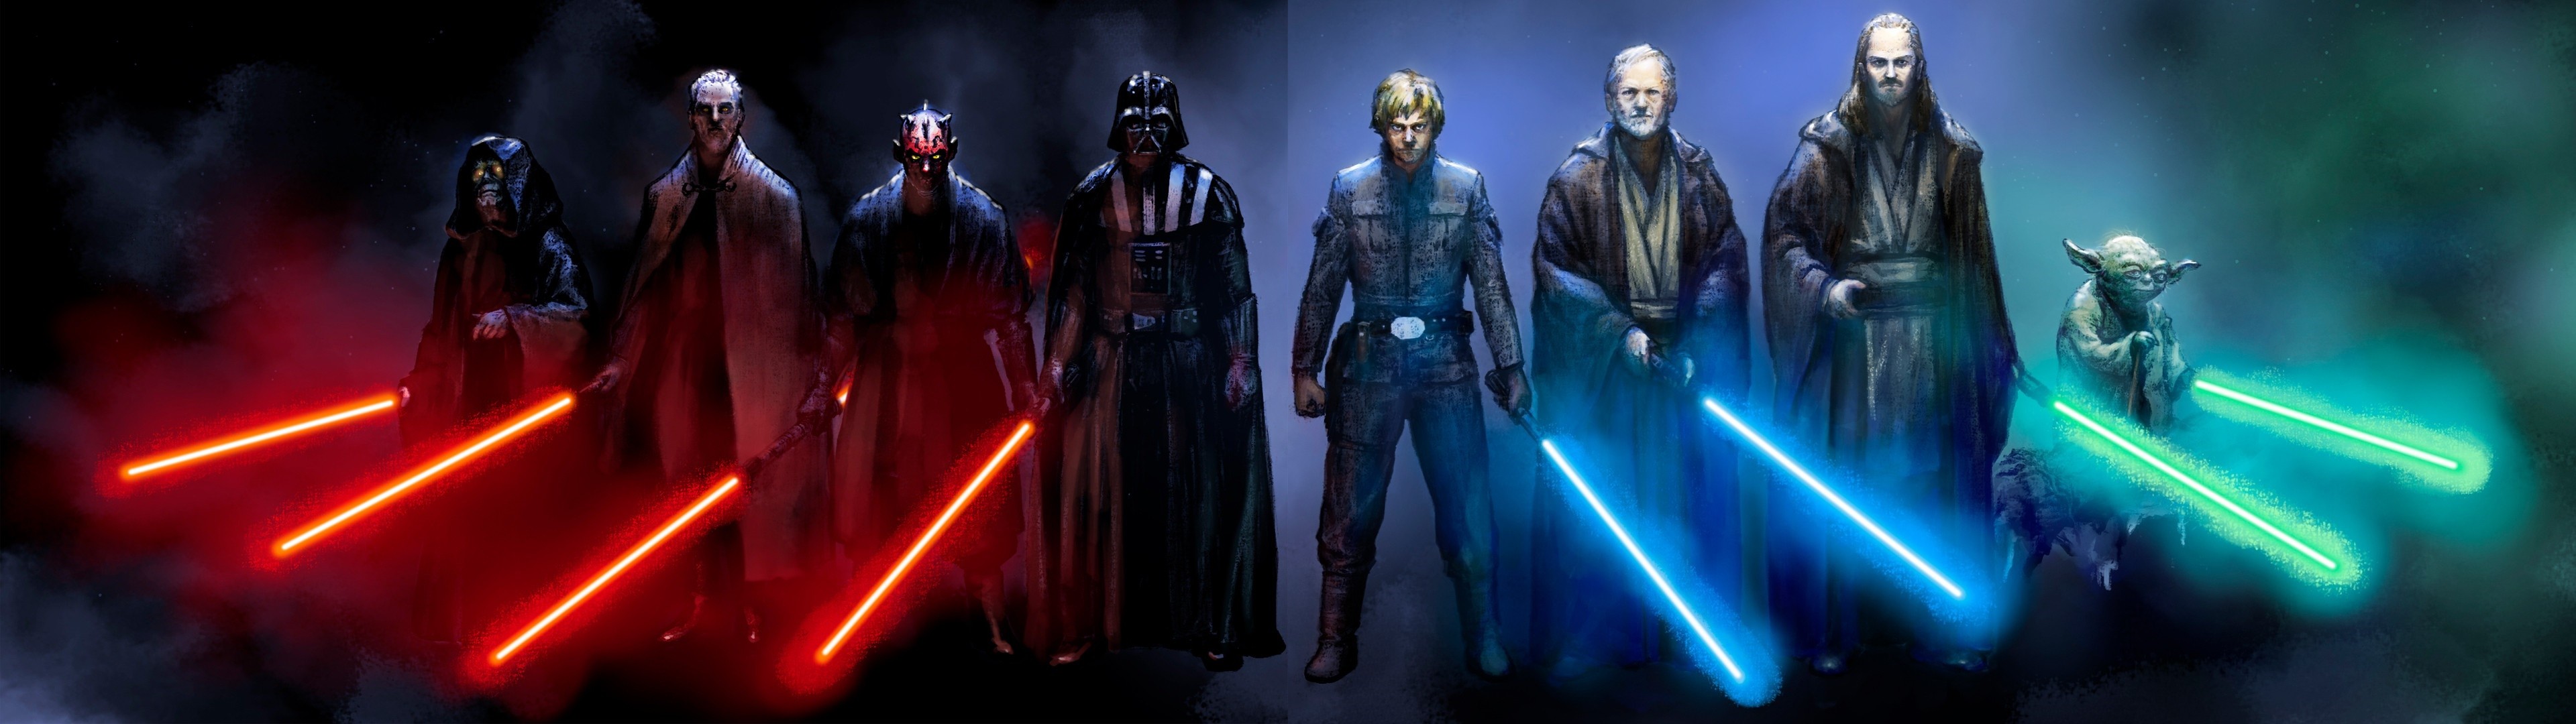 Sci Fi – Star Wars Darth Vader Darth Maul Yoda Obi-Wan Kenobi Sith (